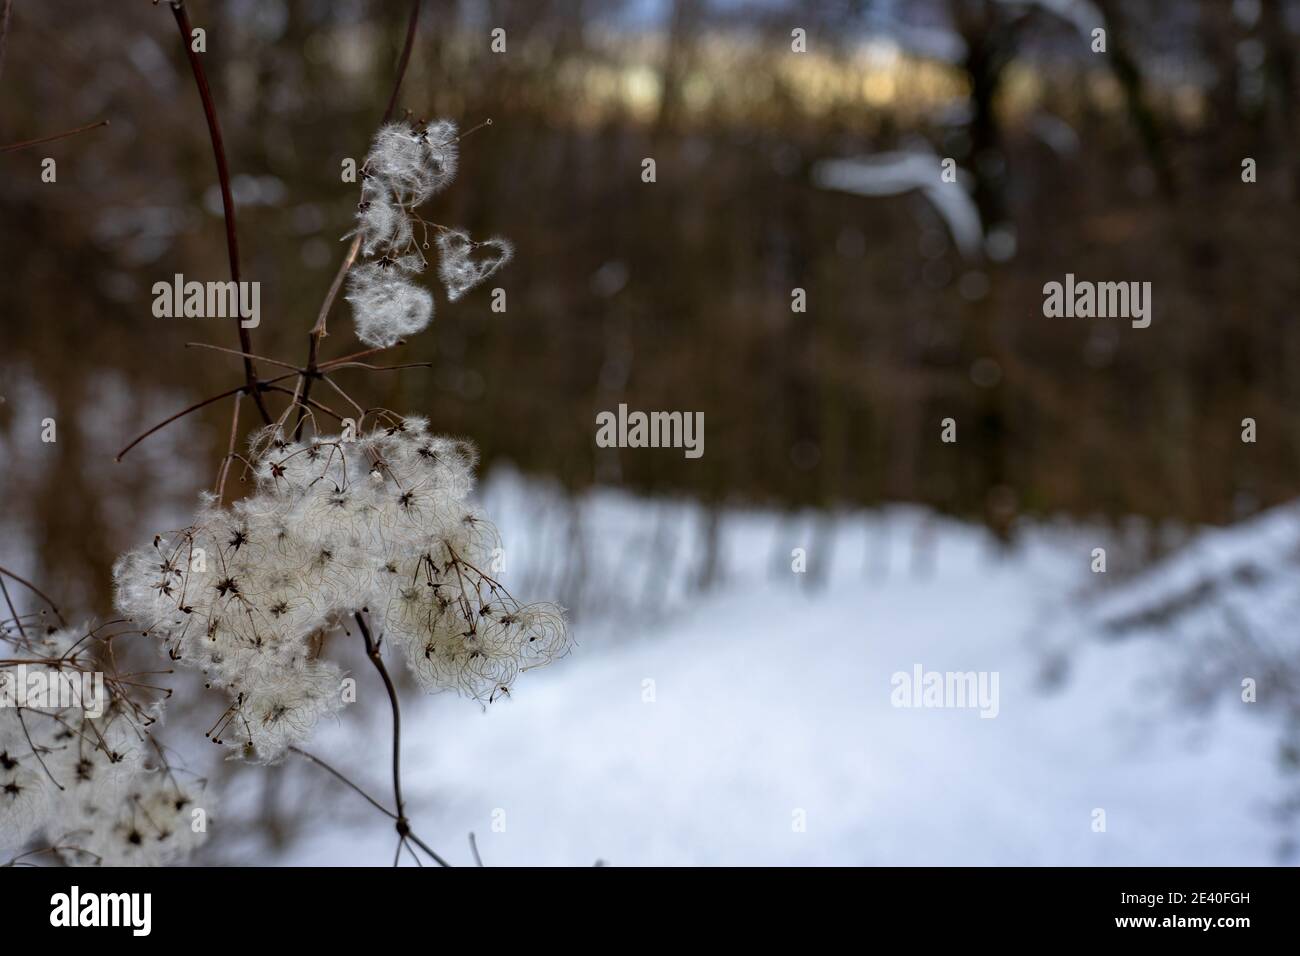 clematis vitalba vainas suaves y esponjosas semillas difusas en invierno bosque Foto de stock